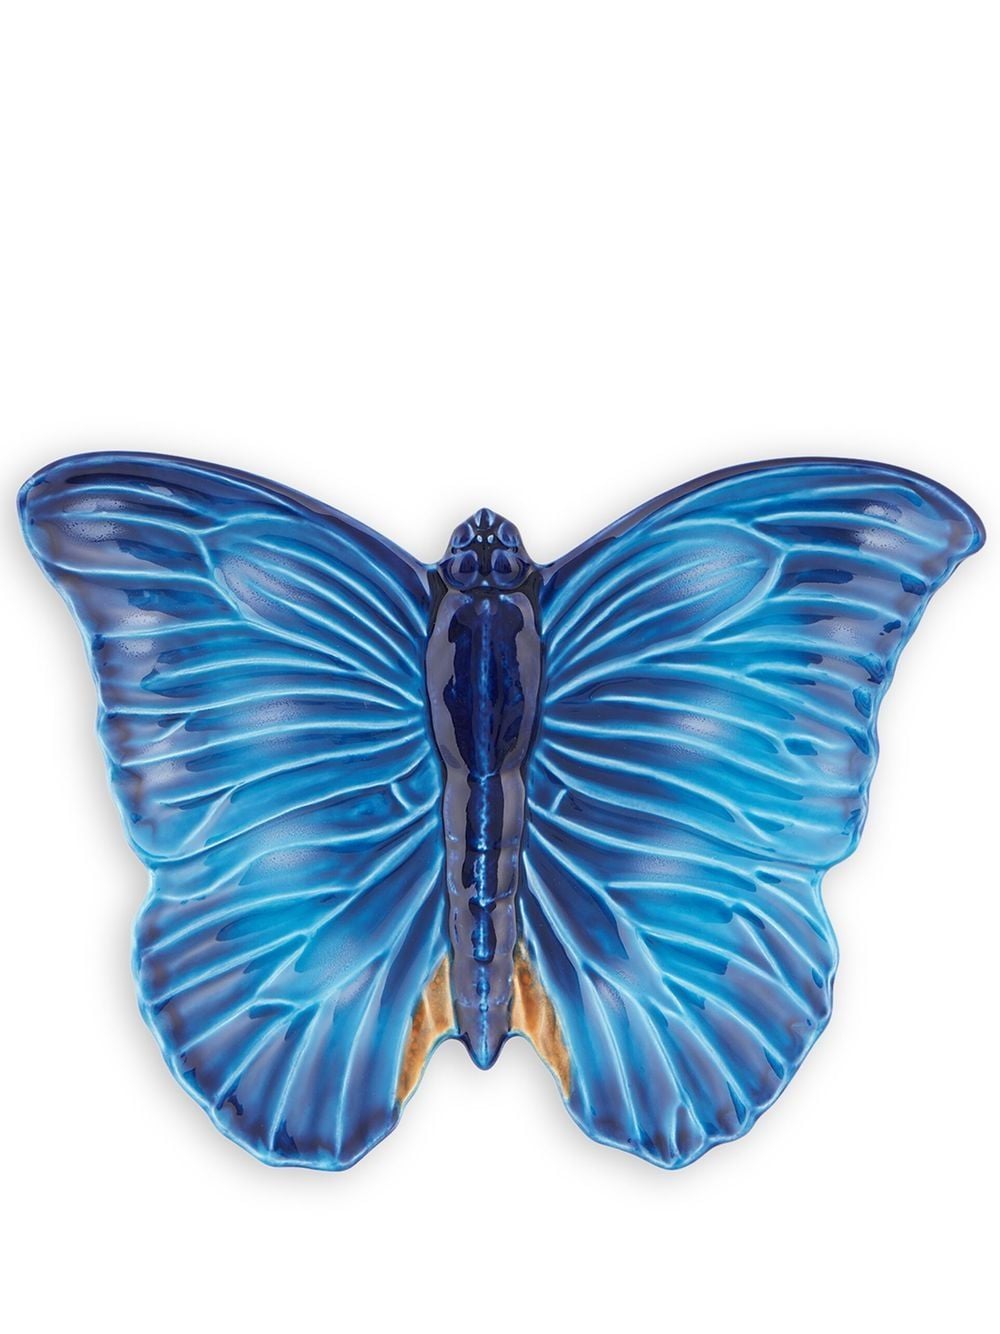 Bordallo Pinheiro 'Cloudy Butterflies' dish - Blue von Bordallo Pinheiro